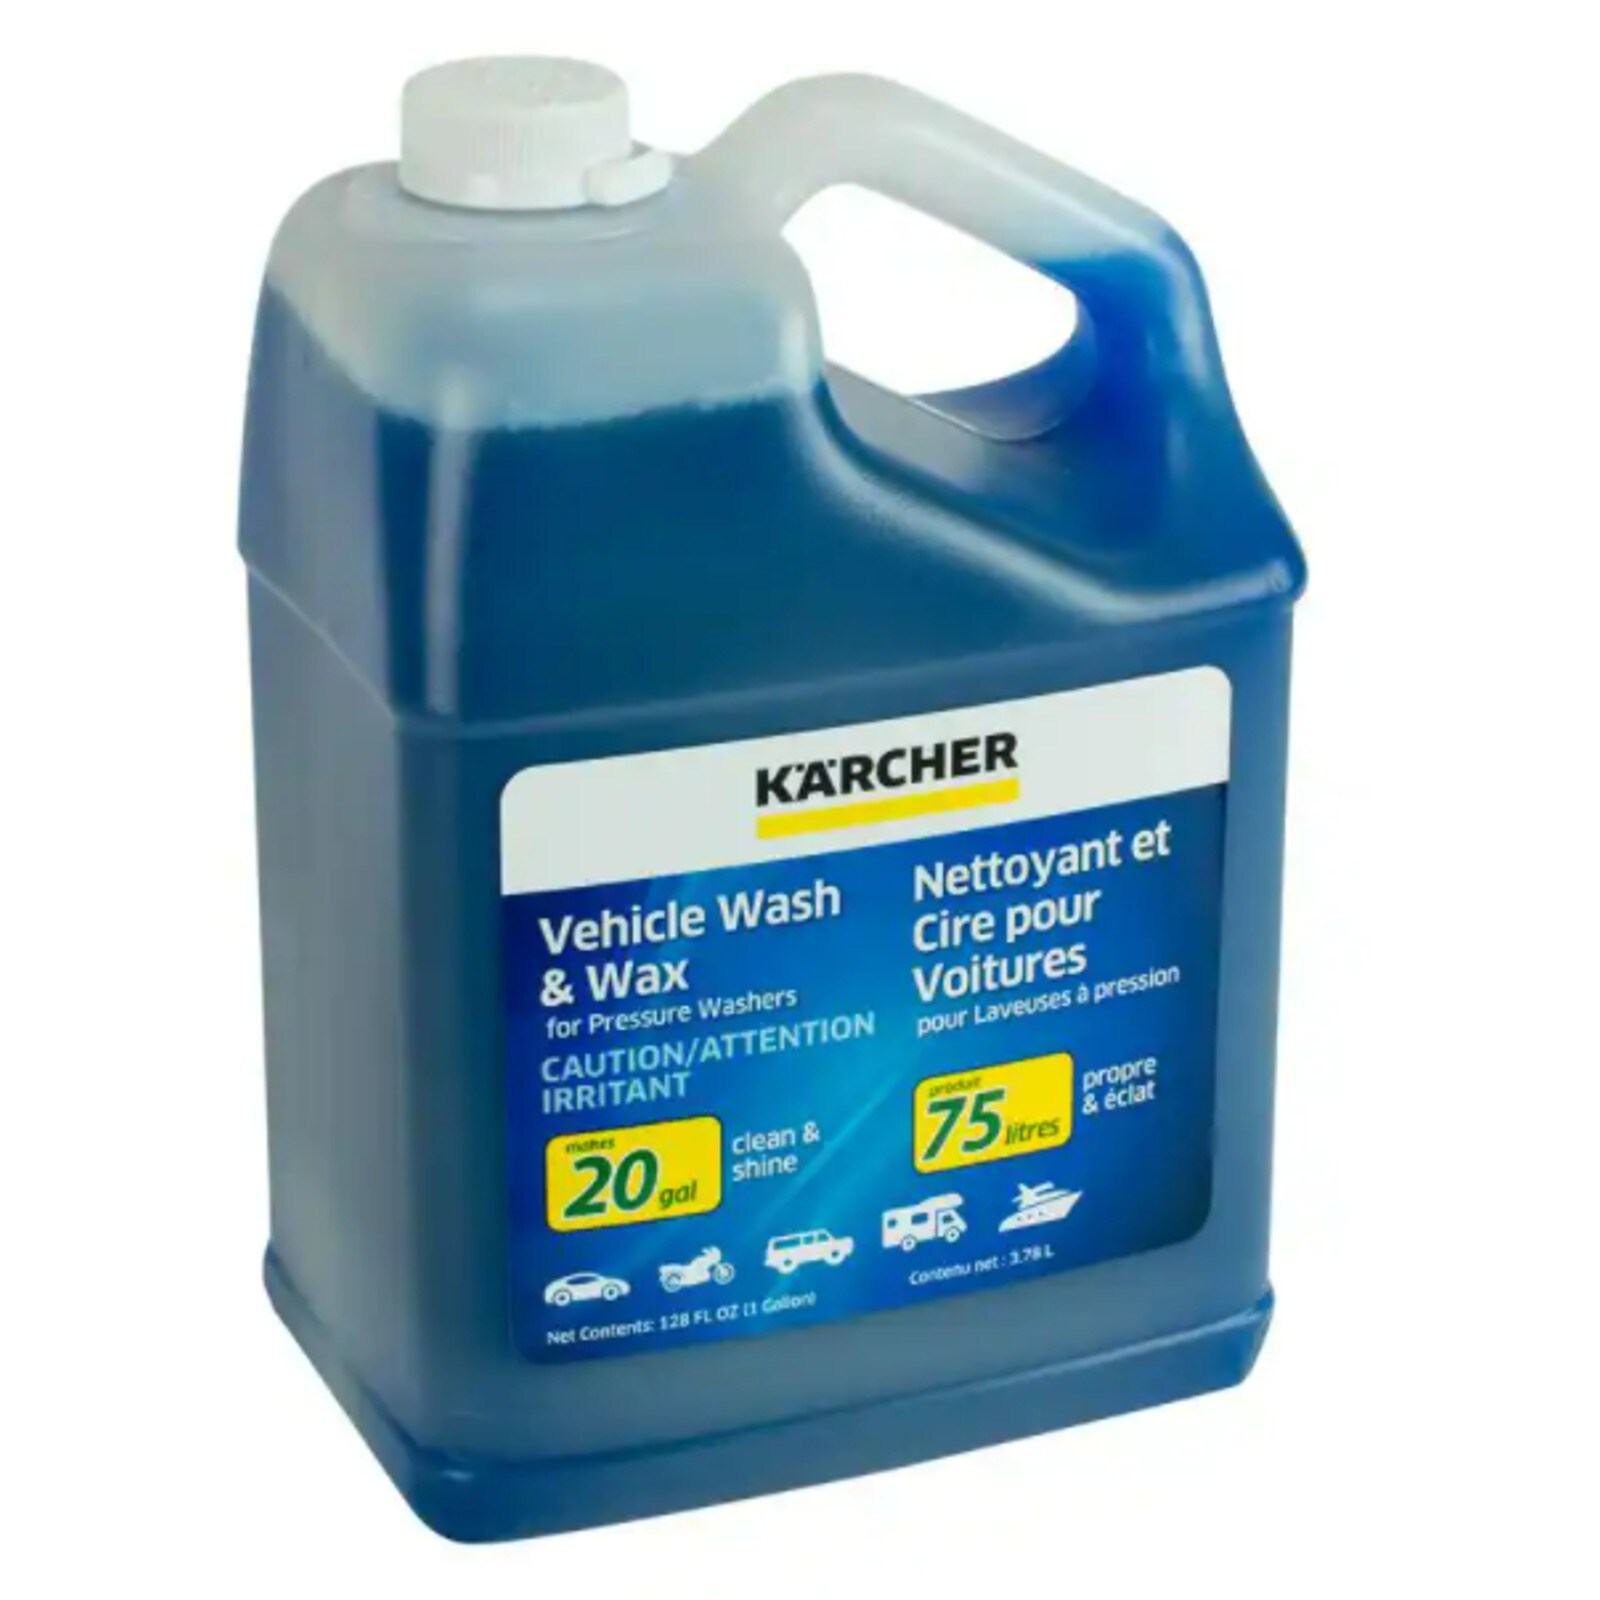 Car Wash Equipment I Car Wash Package 3 I Karcher Center